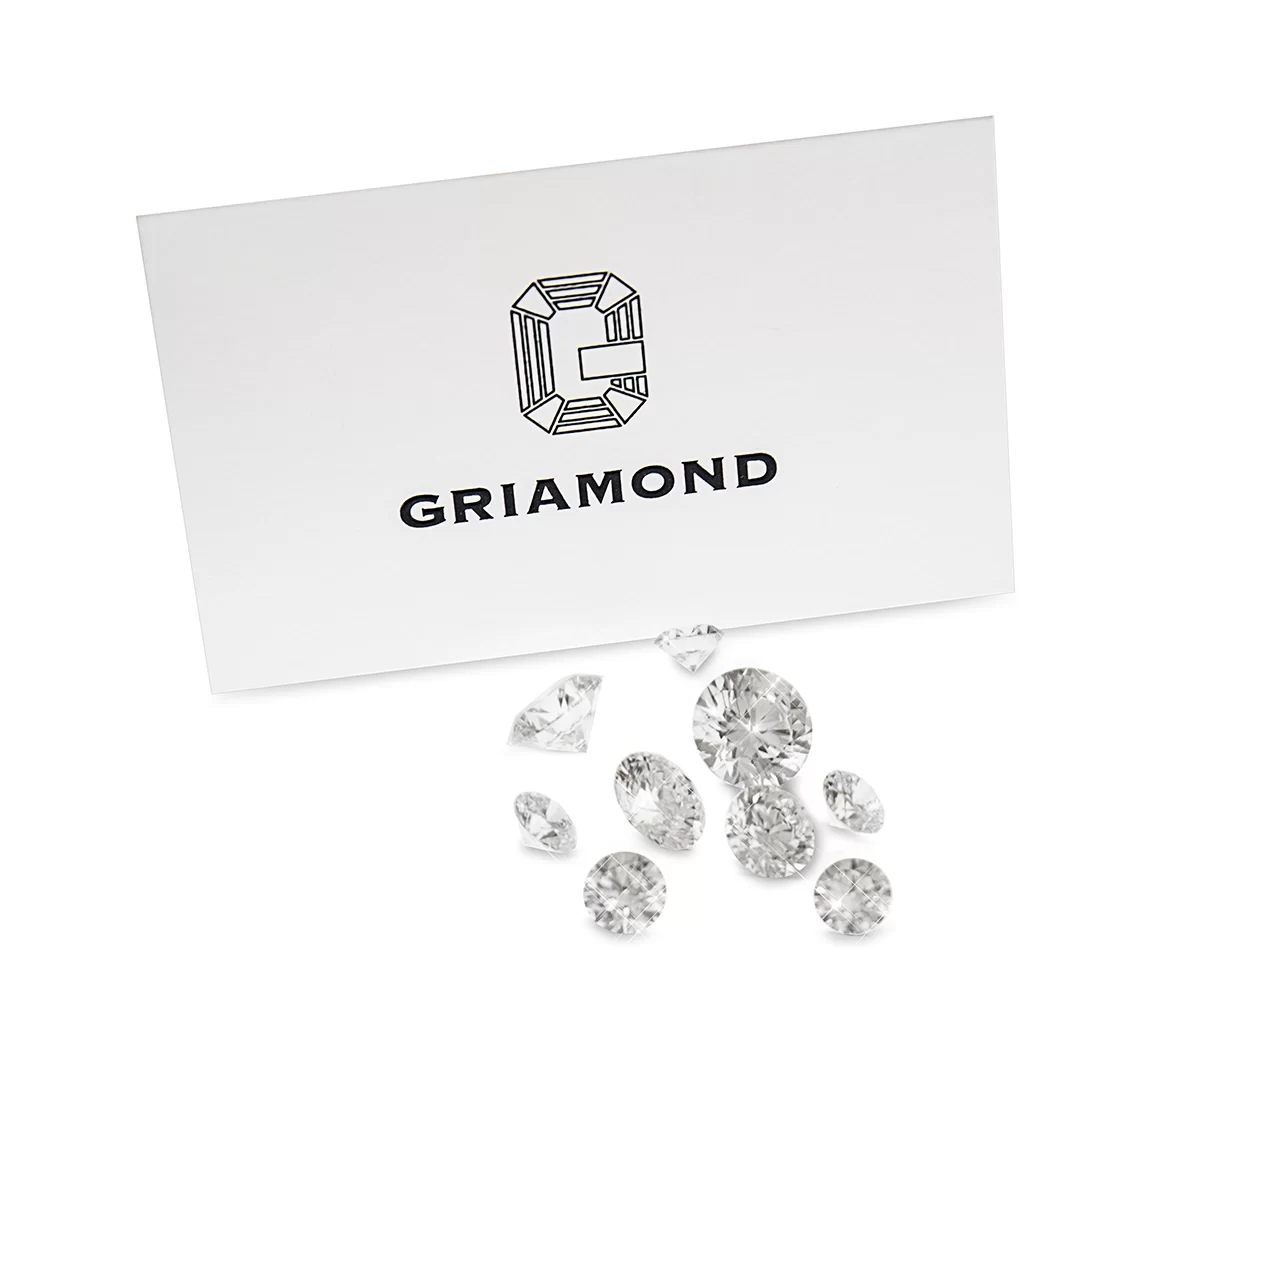 μια άσπρη κάρτα που γράφει το λογότυπο και το όνομα της griamond και μπροστά από την κάρτα υπάρχουν διαφόρων μεγεθών διαμάντια